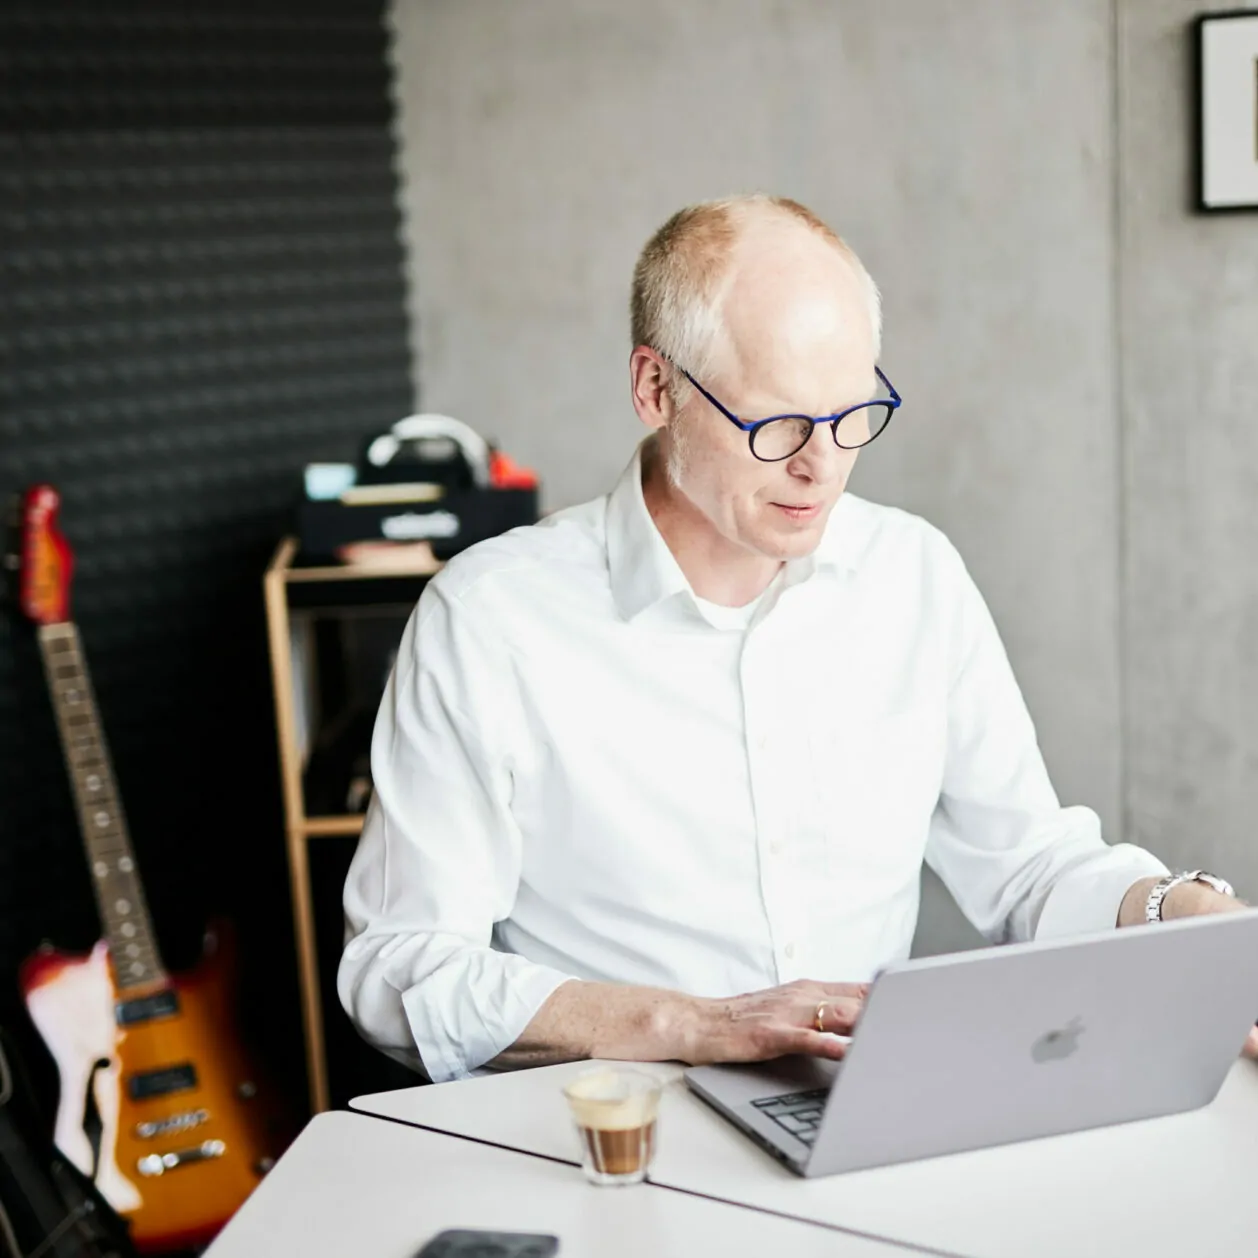 Ein älterer Mann, der am Laptop arbeitet und nach seinem Smartphone greift - im Hintergrund sind E-Gitarren zu sehen.